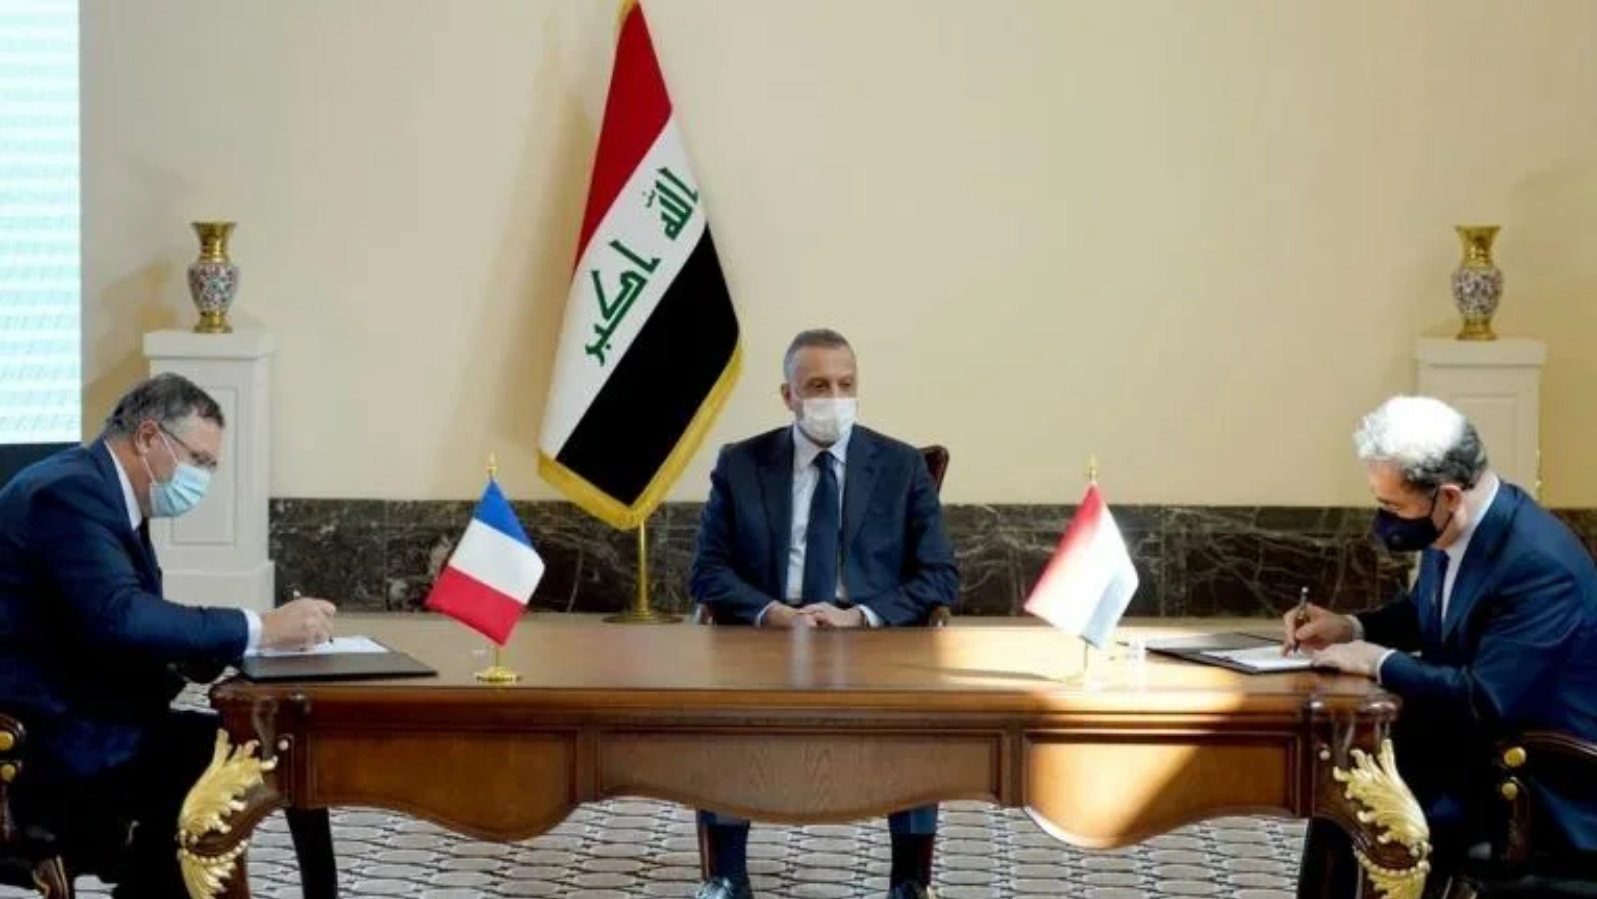 ممثل عن الحكومة العراقية (يمين) ورئيس توتال إنرجيز باتريك بوياني (يسار) يوقعان العقد بحضور رئيس الوزراء العراقي مصطفى الكاظمي في العاصمة بغداد. بتاريخ 5 أيلول/ سبتمبر 2021.